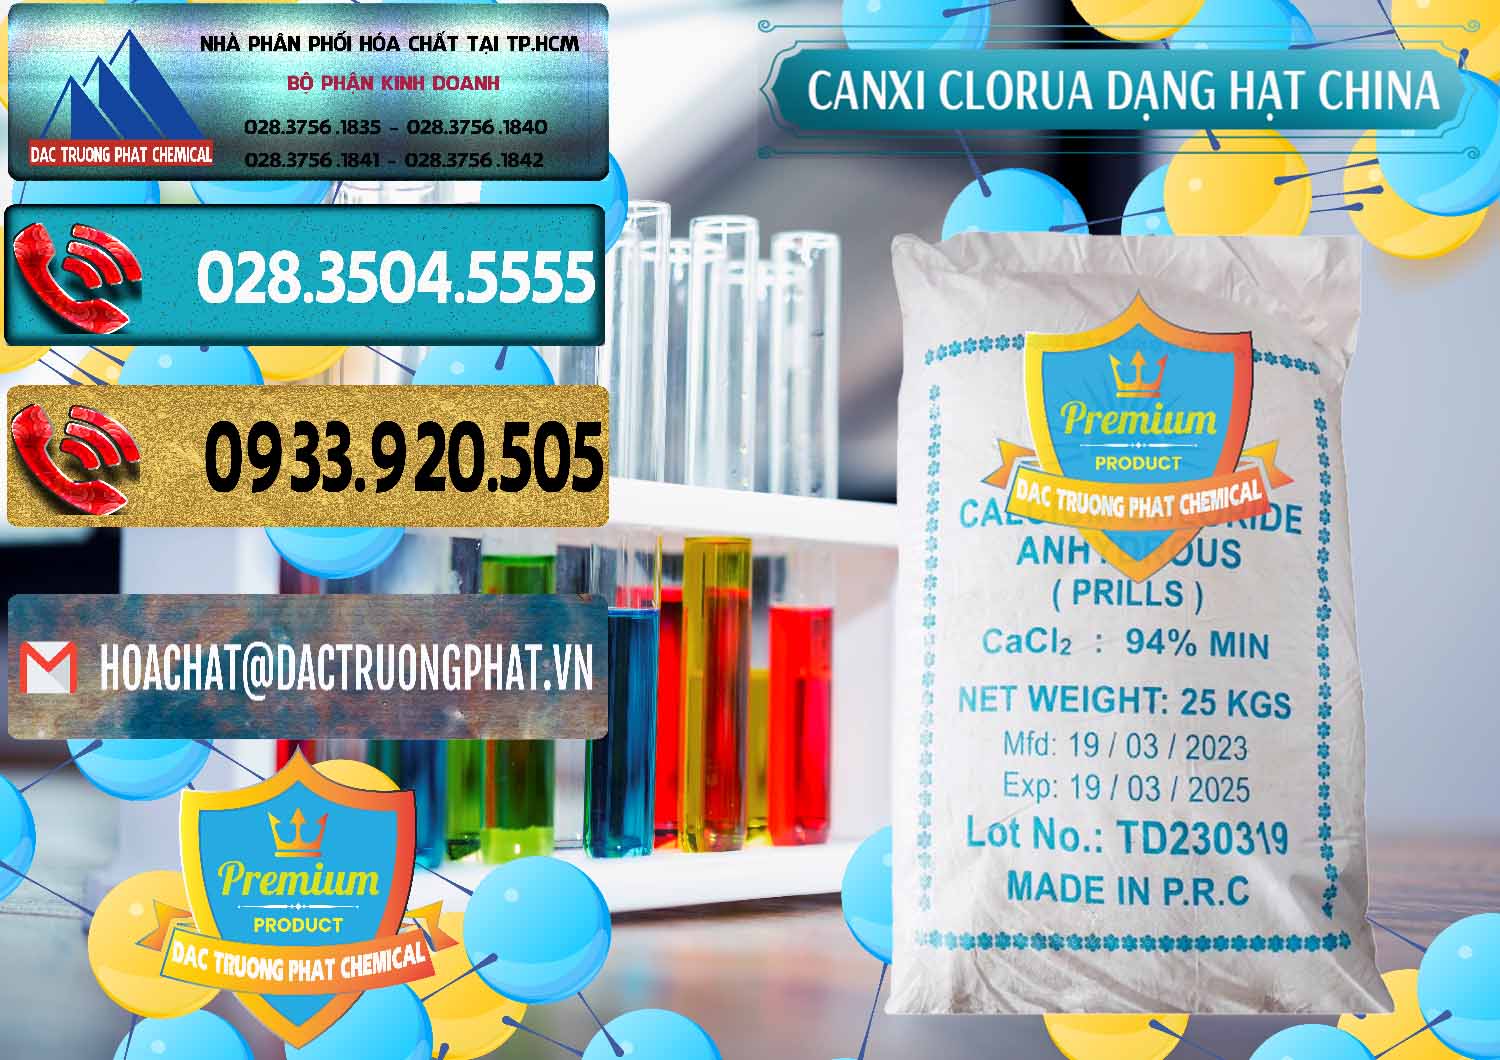 Nơi cung ứng - bán CaCl2 – Canxi Clorua 94% Dạng Hạt Trung Quốc China - 0373 - Nhà cung cấp và phân phối hóa chất tại TP.HCM - hoachatdetnhuom.com